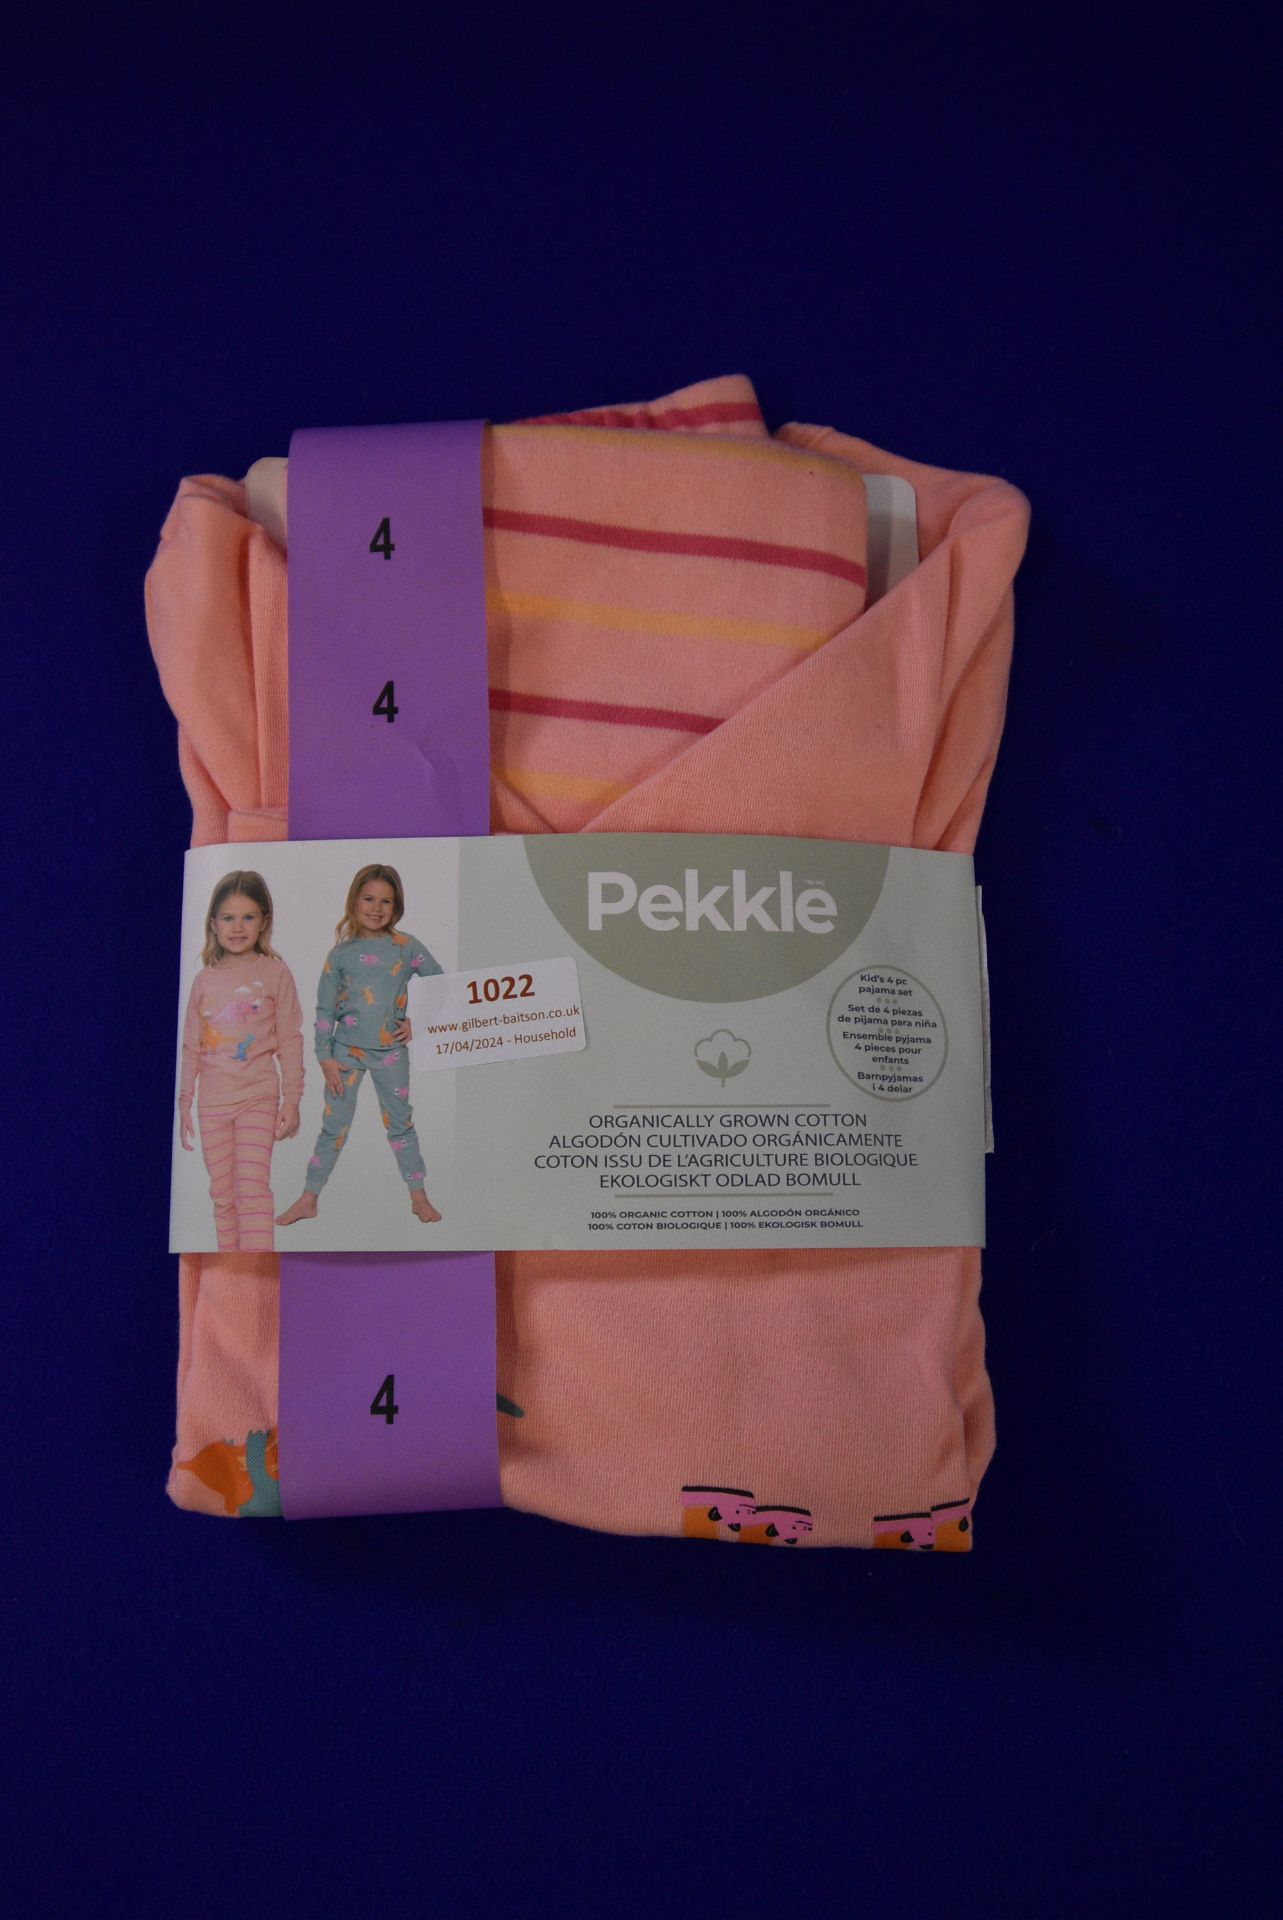 Pekkle Child’s Pyjama s Size: 4